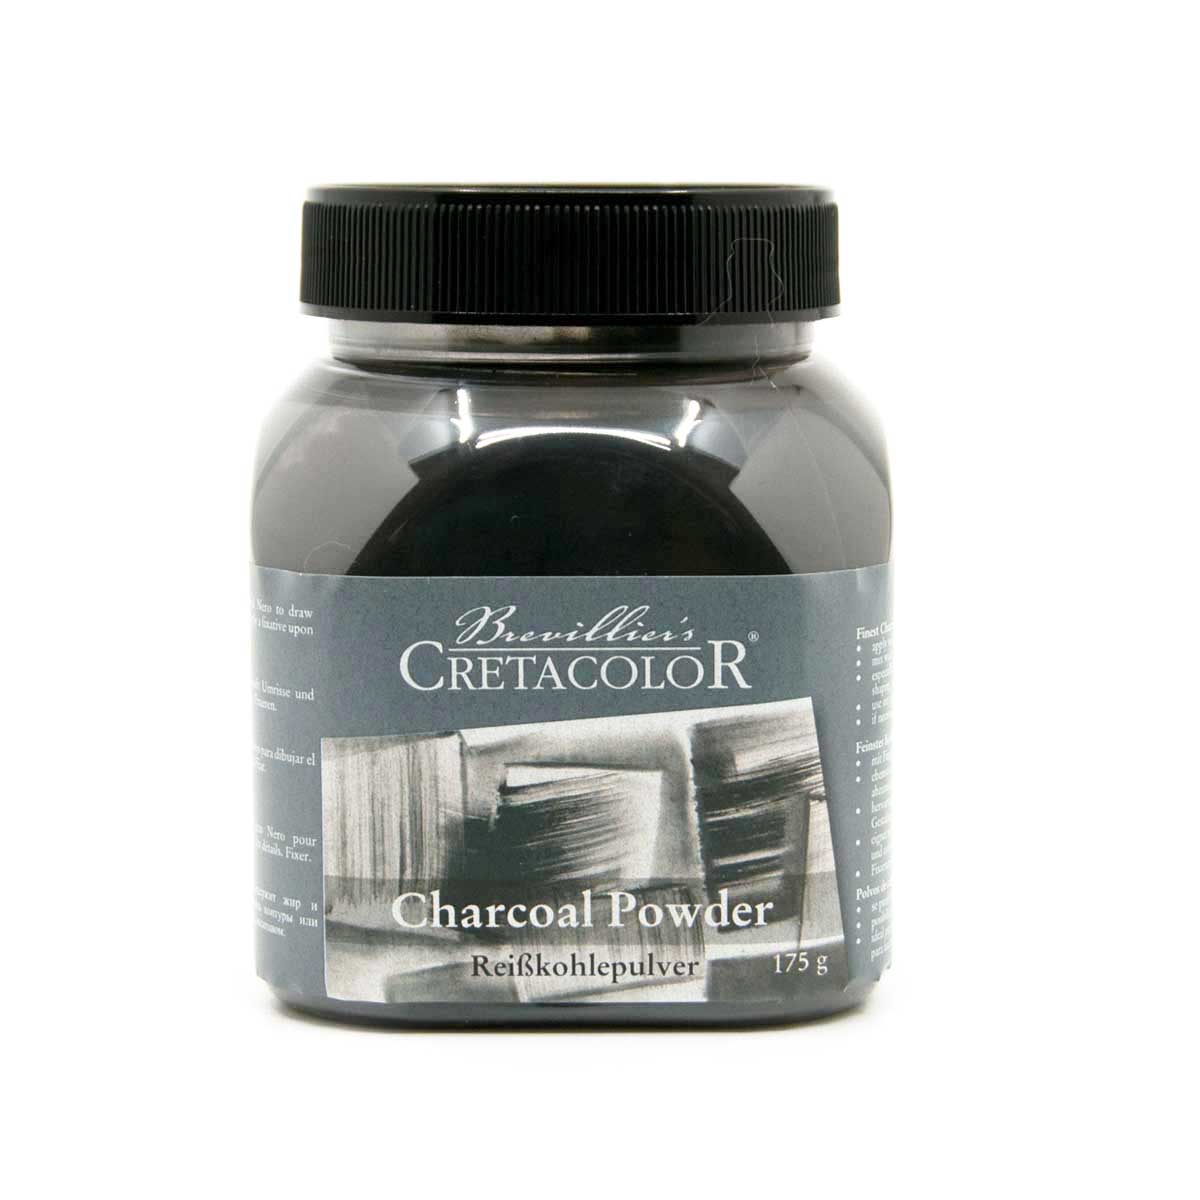 Cretacolor Charcoal Powder 175g Jar